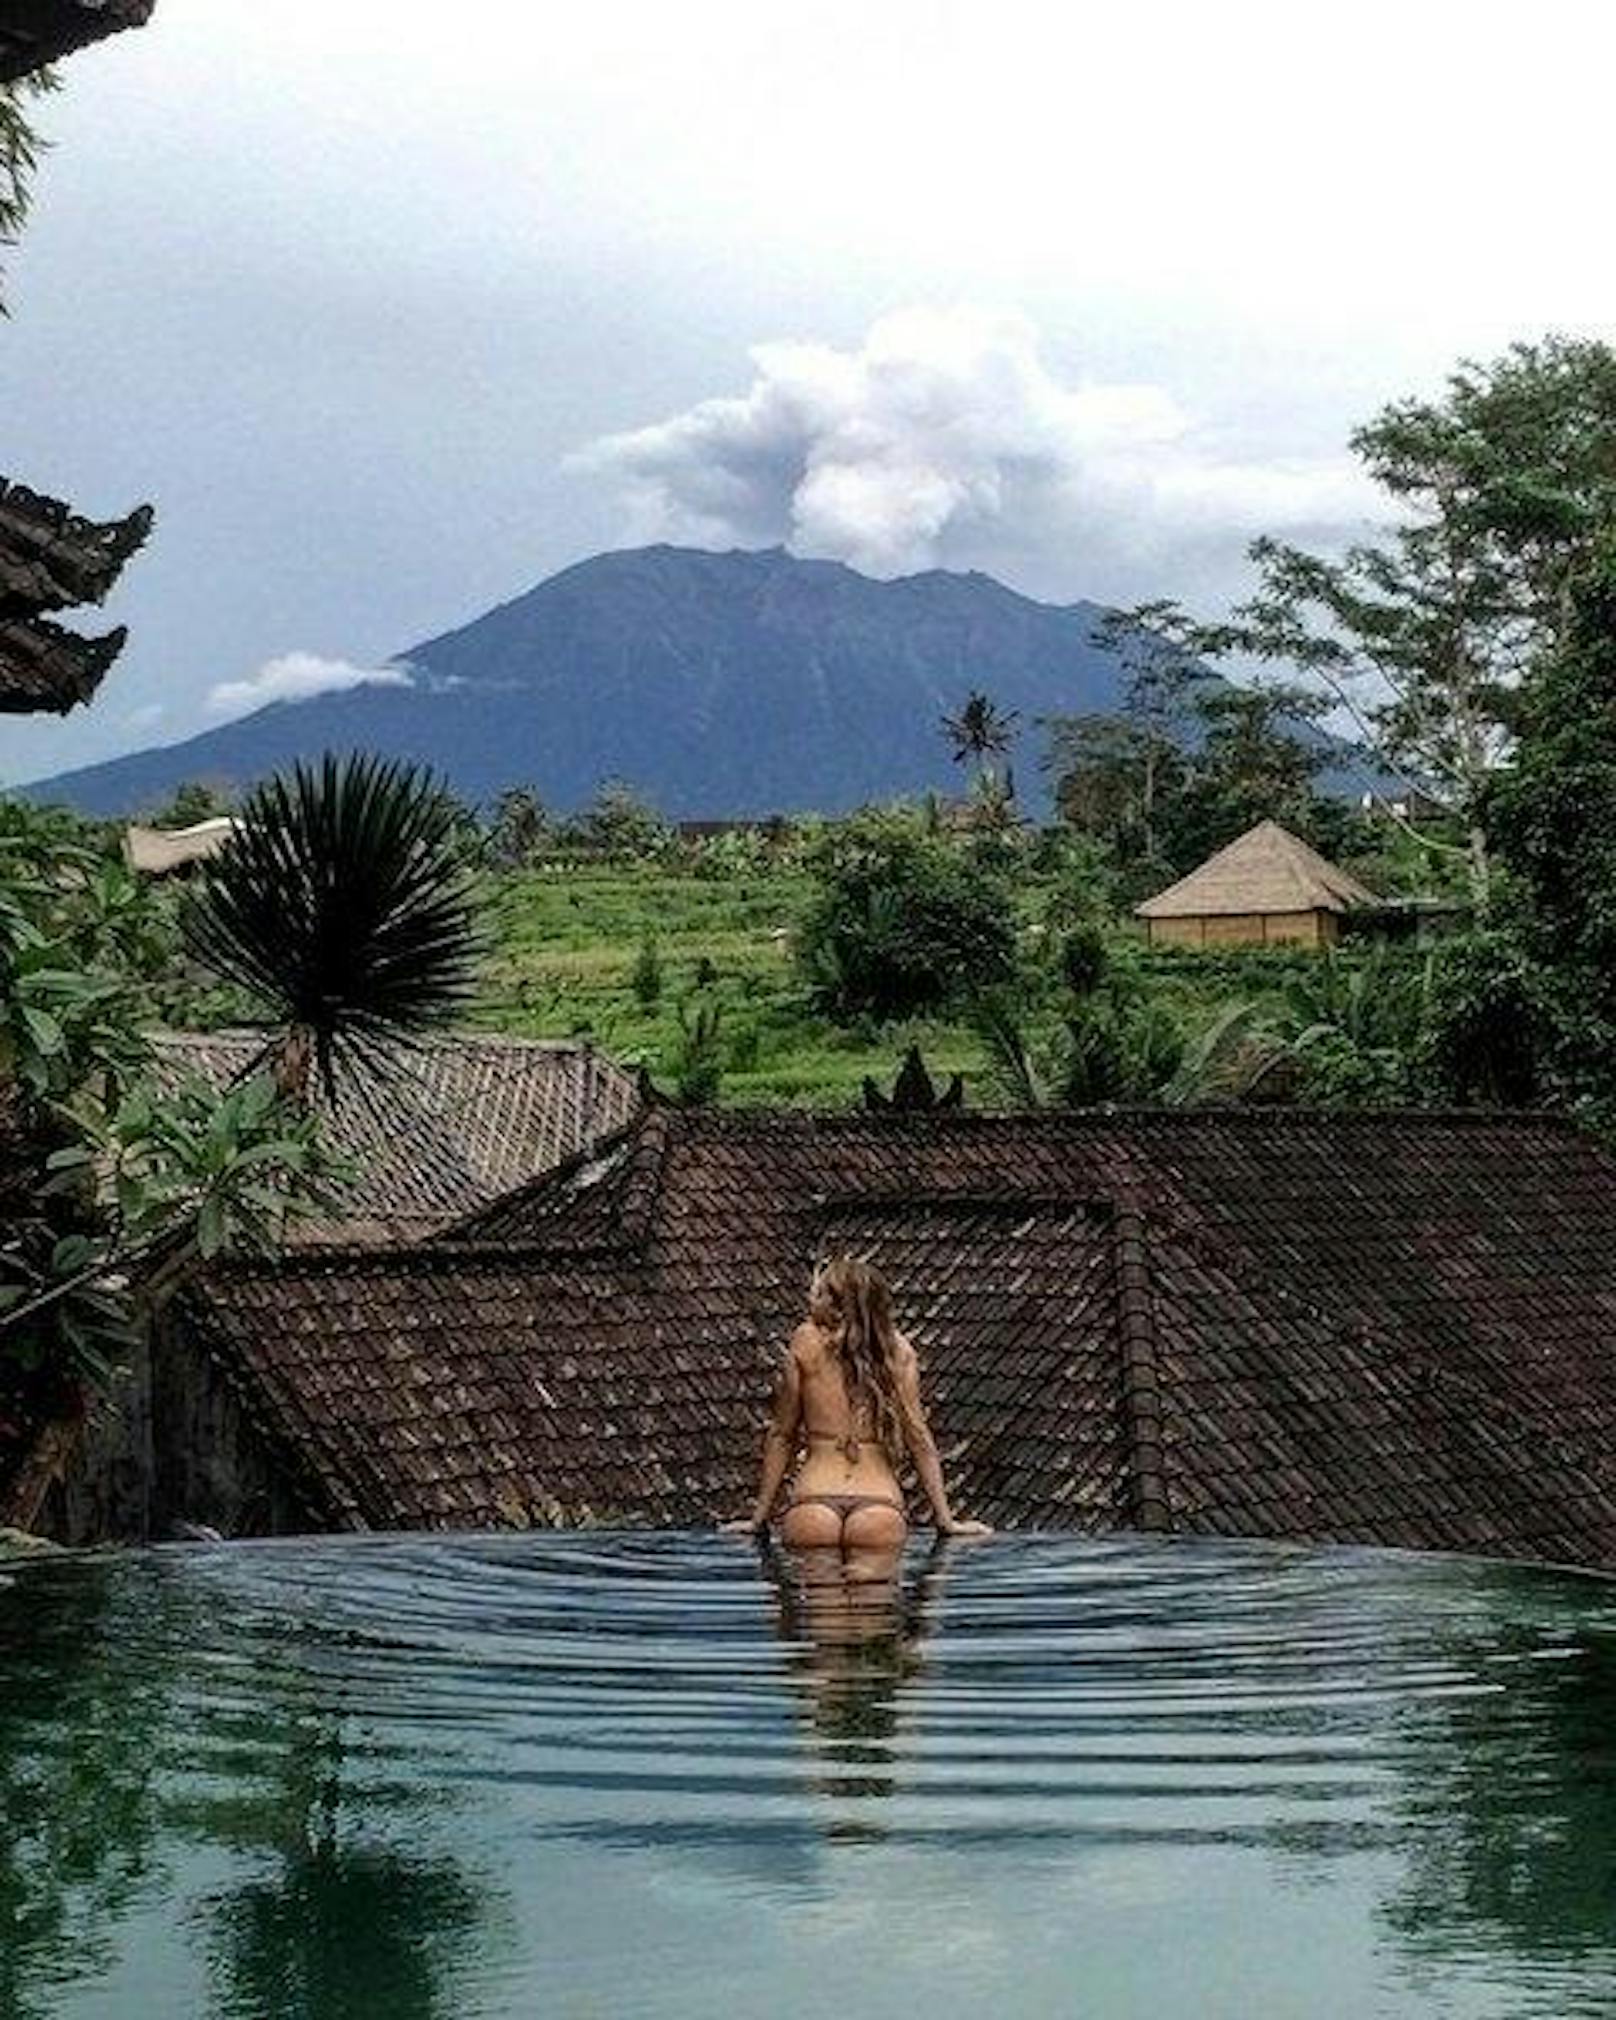 Userin katepolishuk.ua schreibt etwa unter ihr Foto: "Wenn Du alleine im Resort bist, weil Touristen Angst vor dem Vulkan haben, und Du im Dschungel chillst und Energie auftankst ...